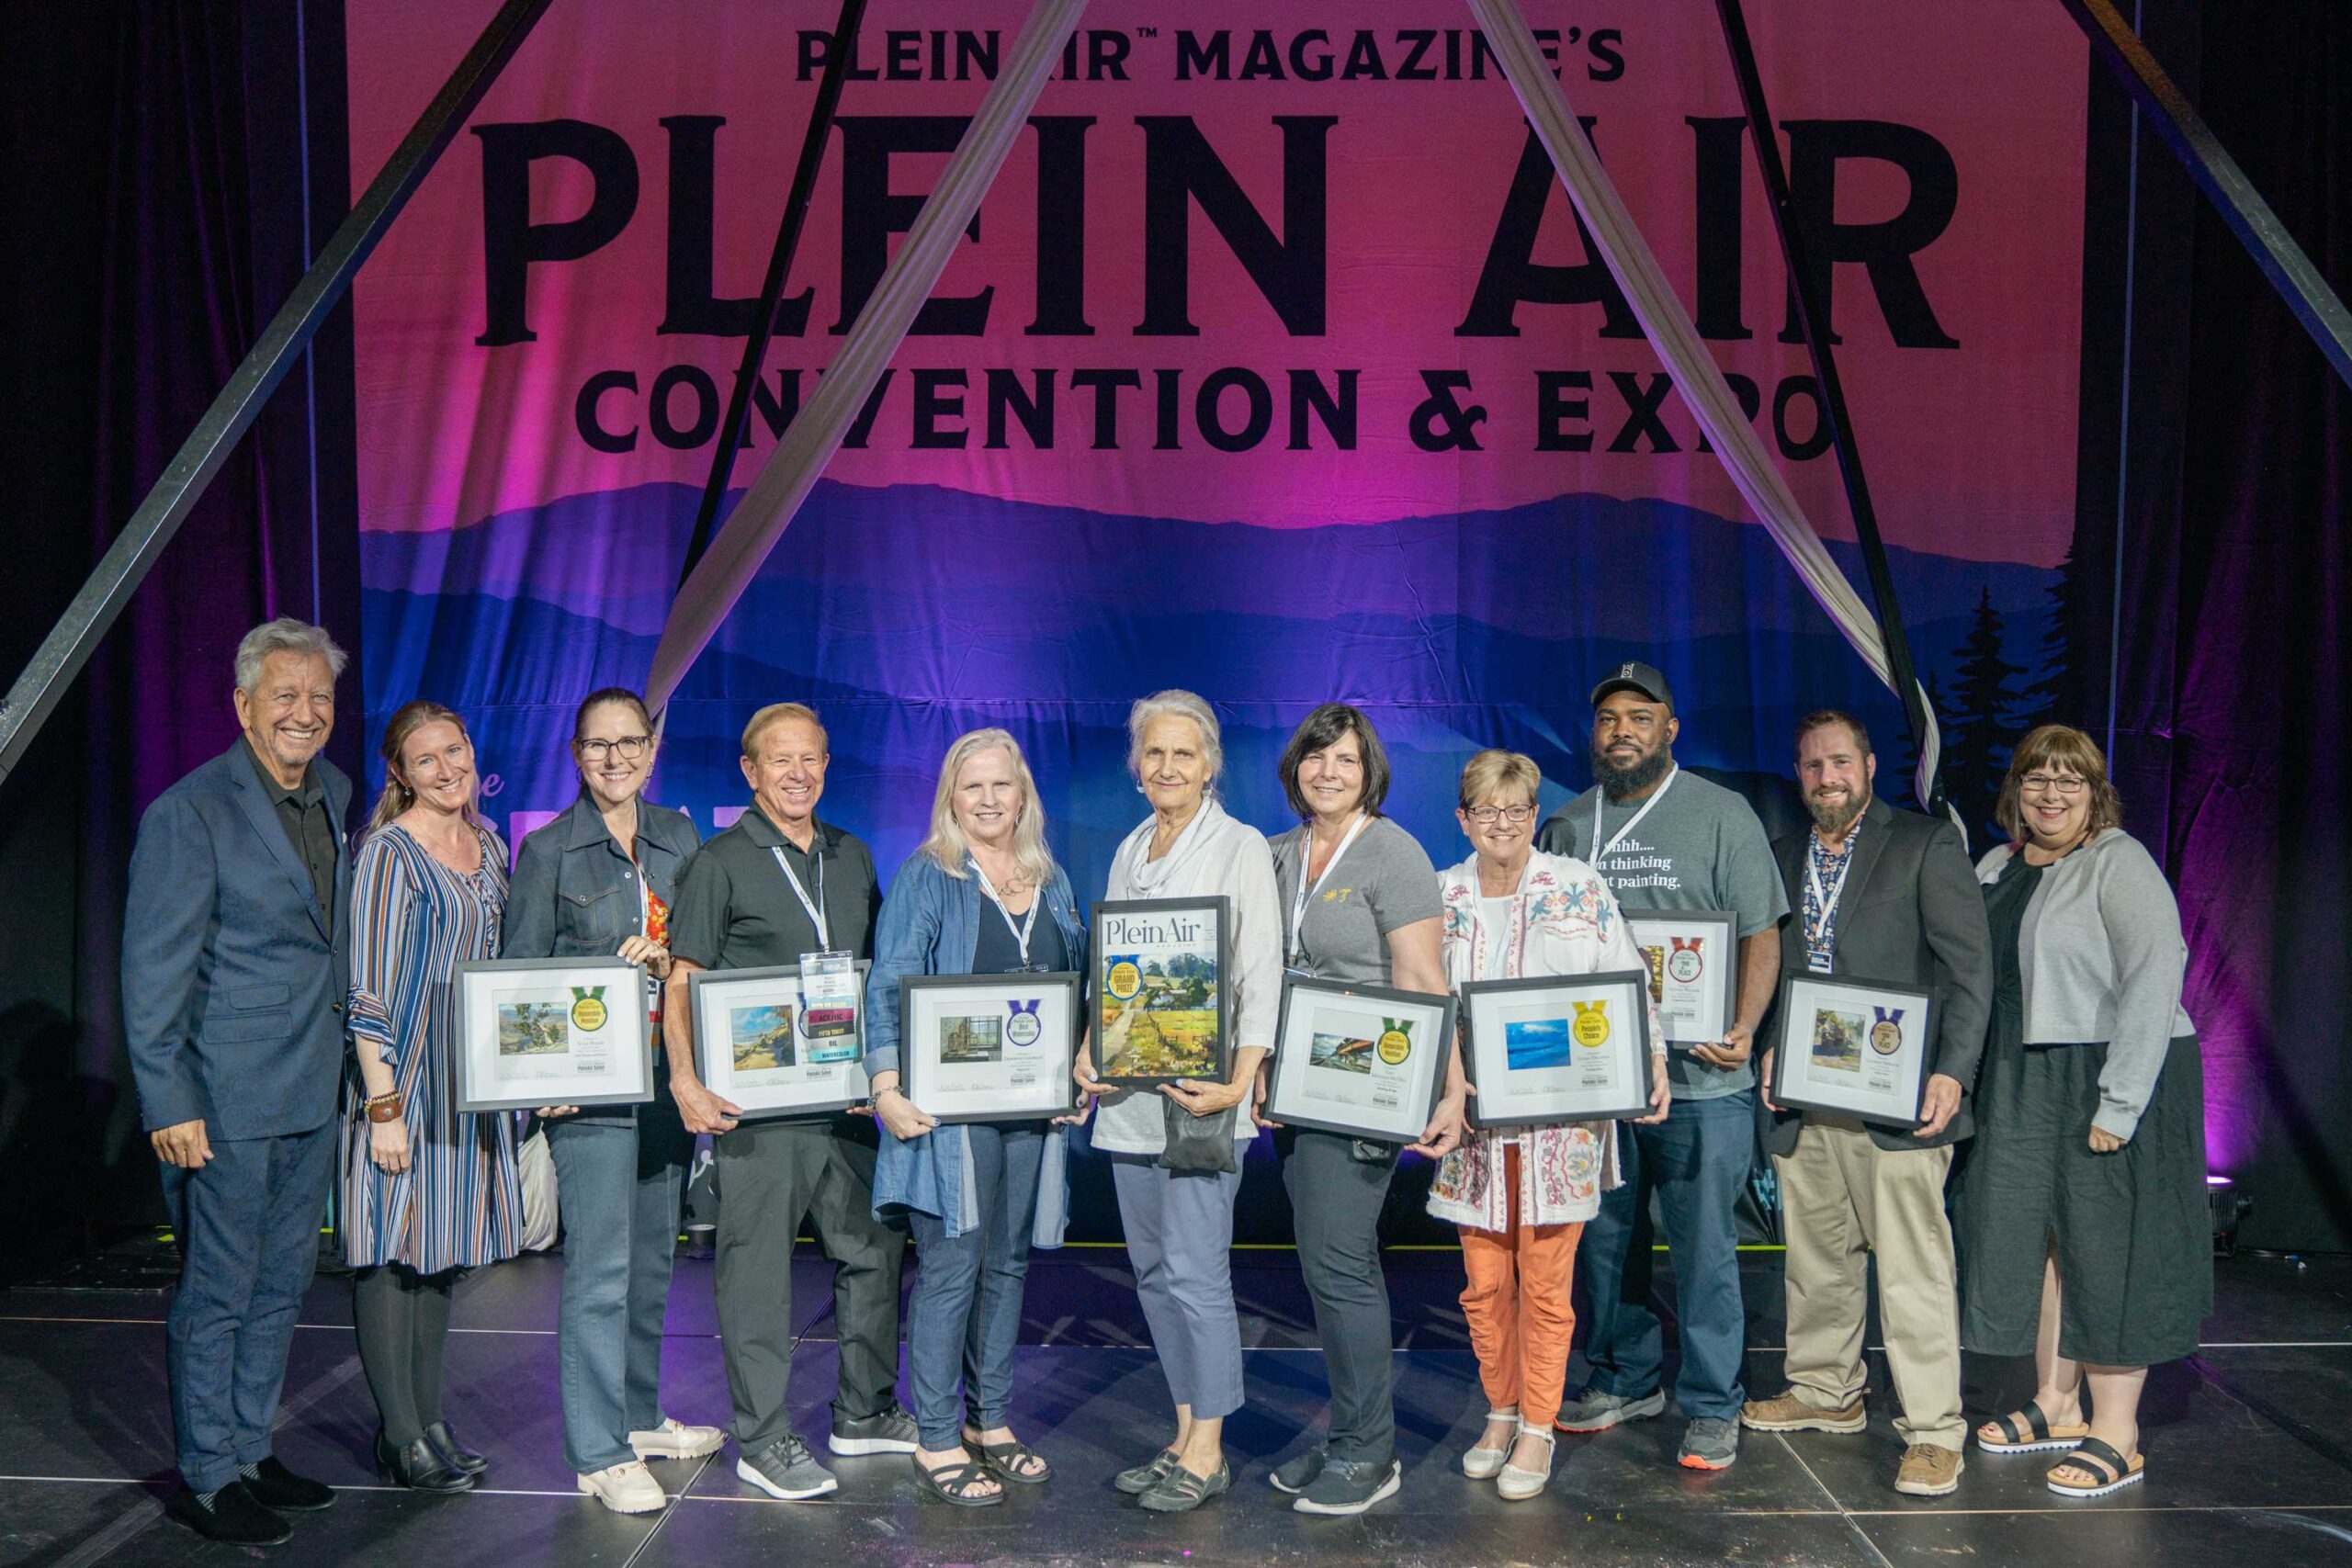 PleinAir Salon winners at the Plein Air Convention